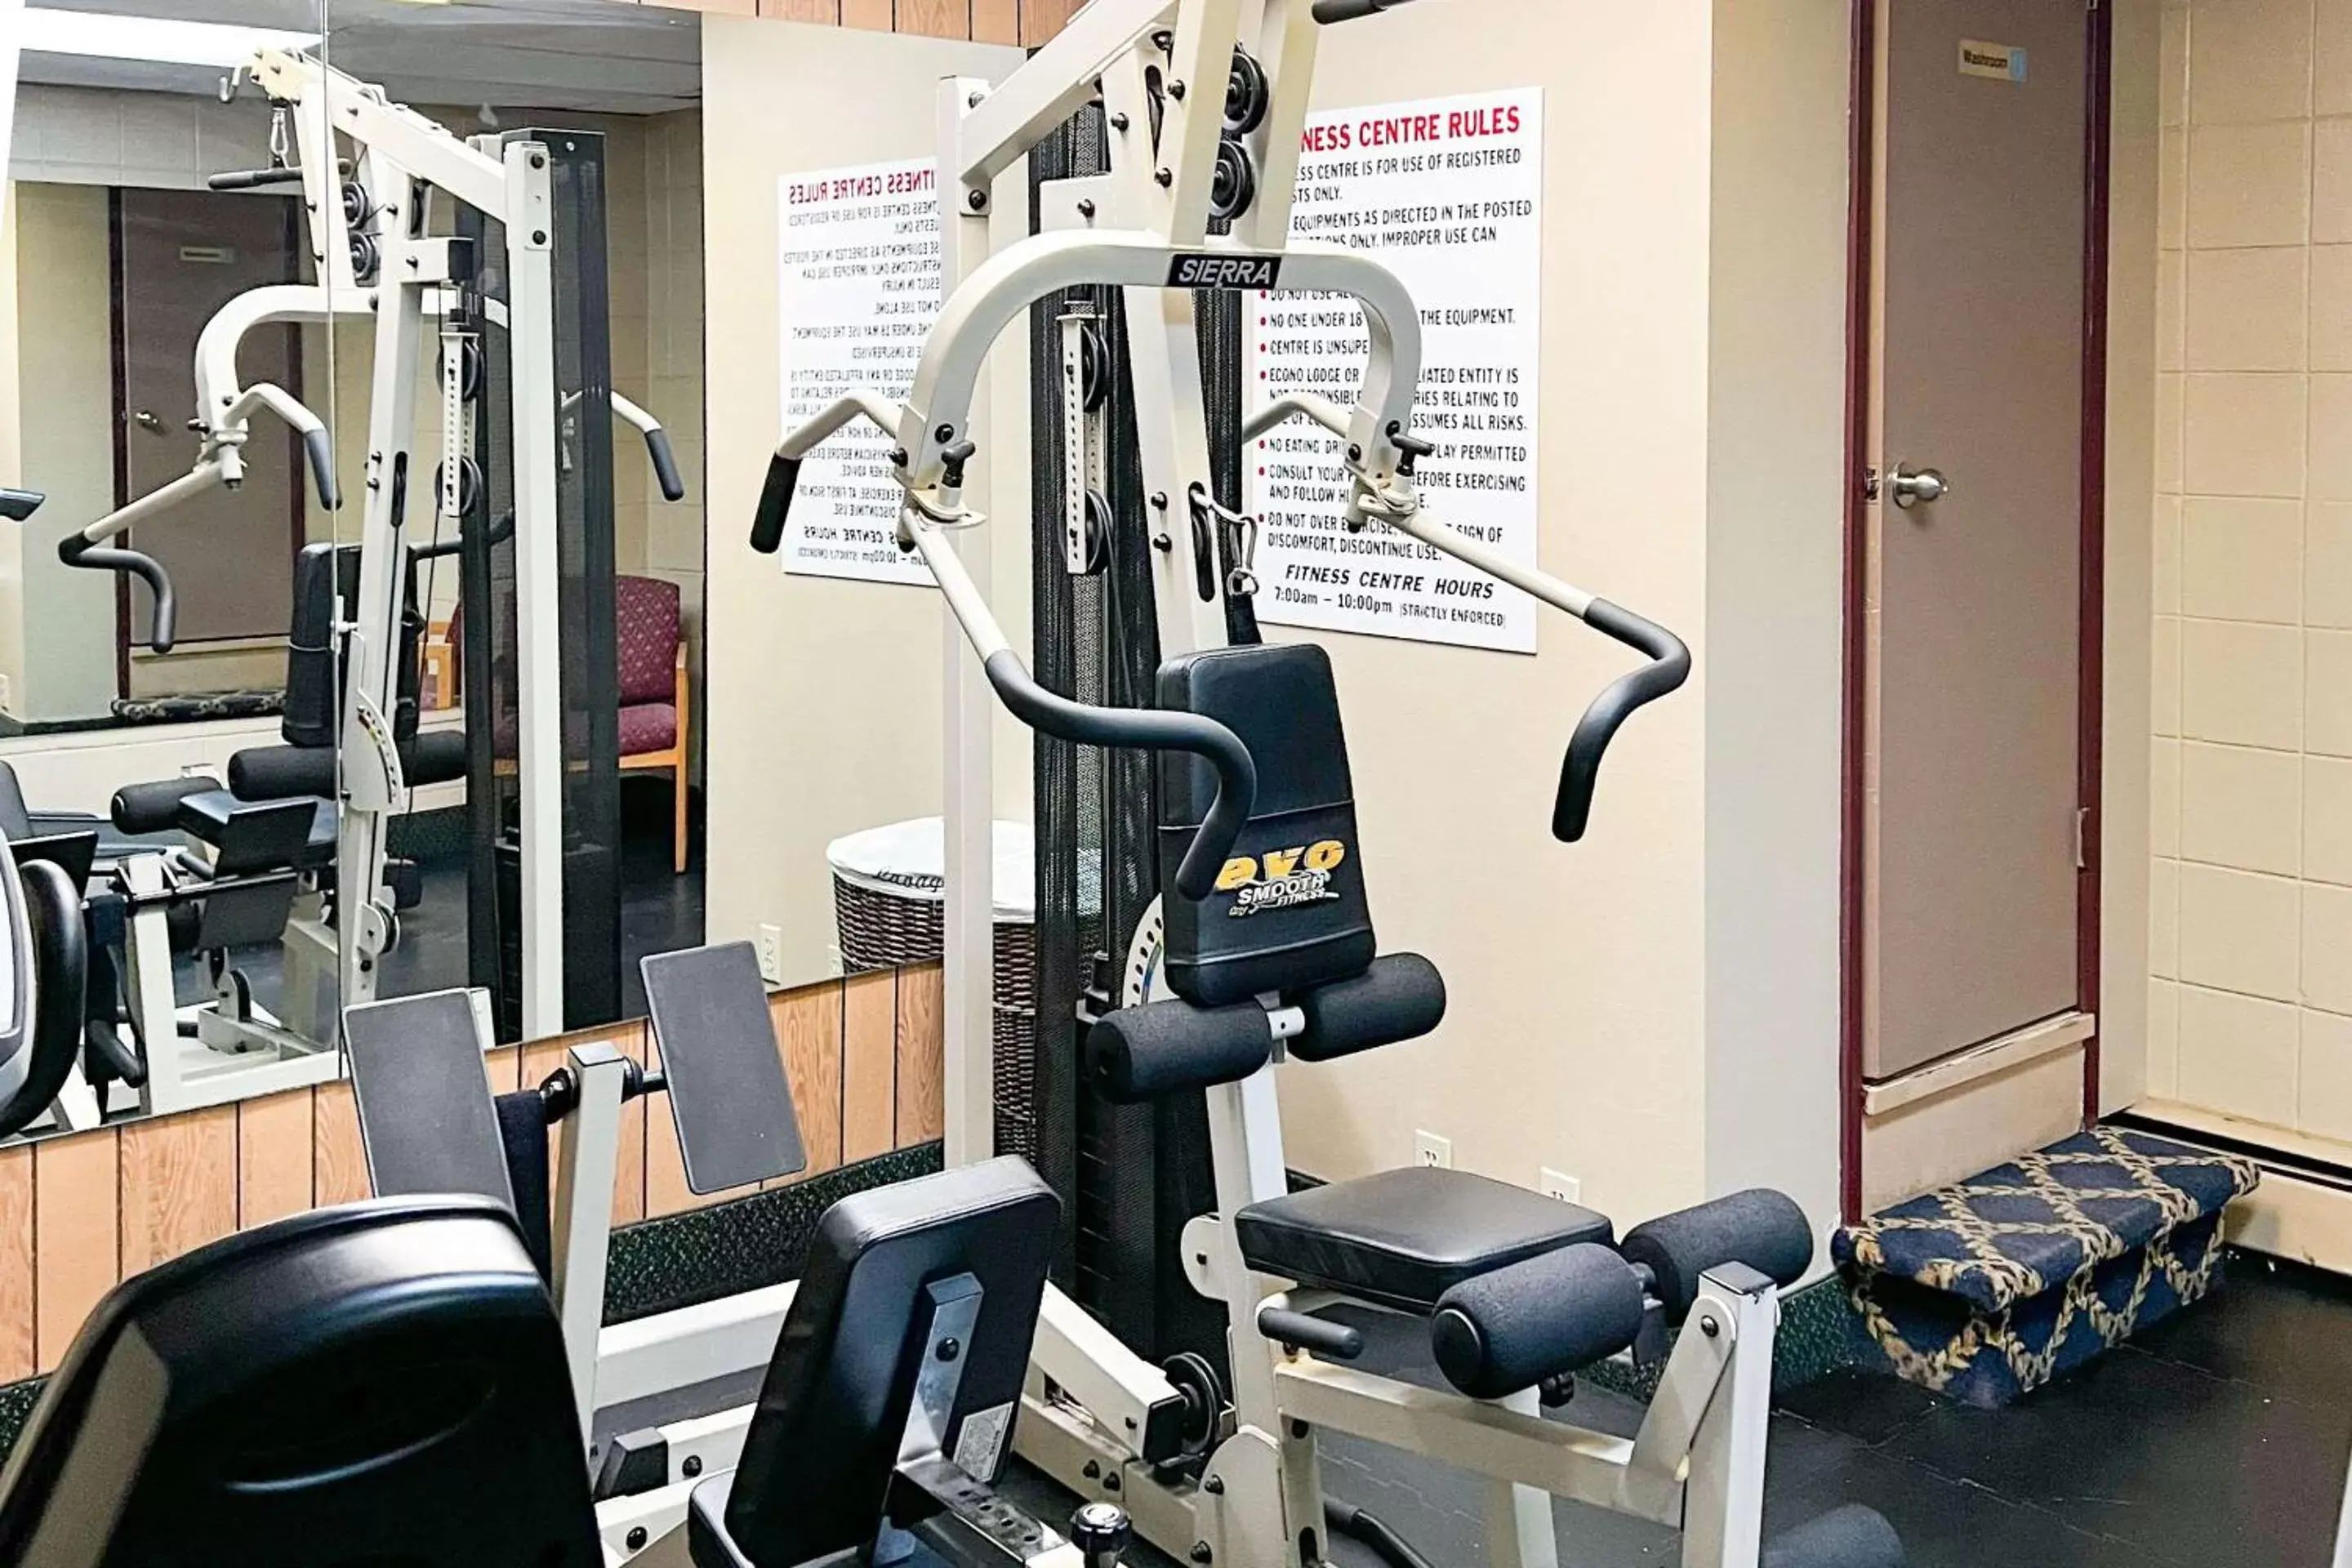 Fitness centre/facilities, Fitness Center/Facilities in Econo Lodge Motel Village